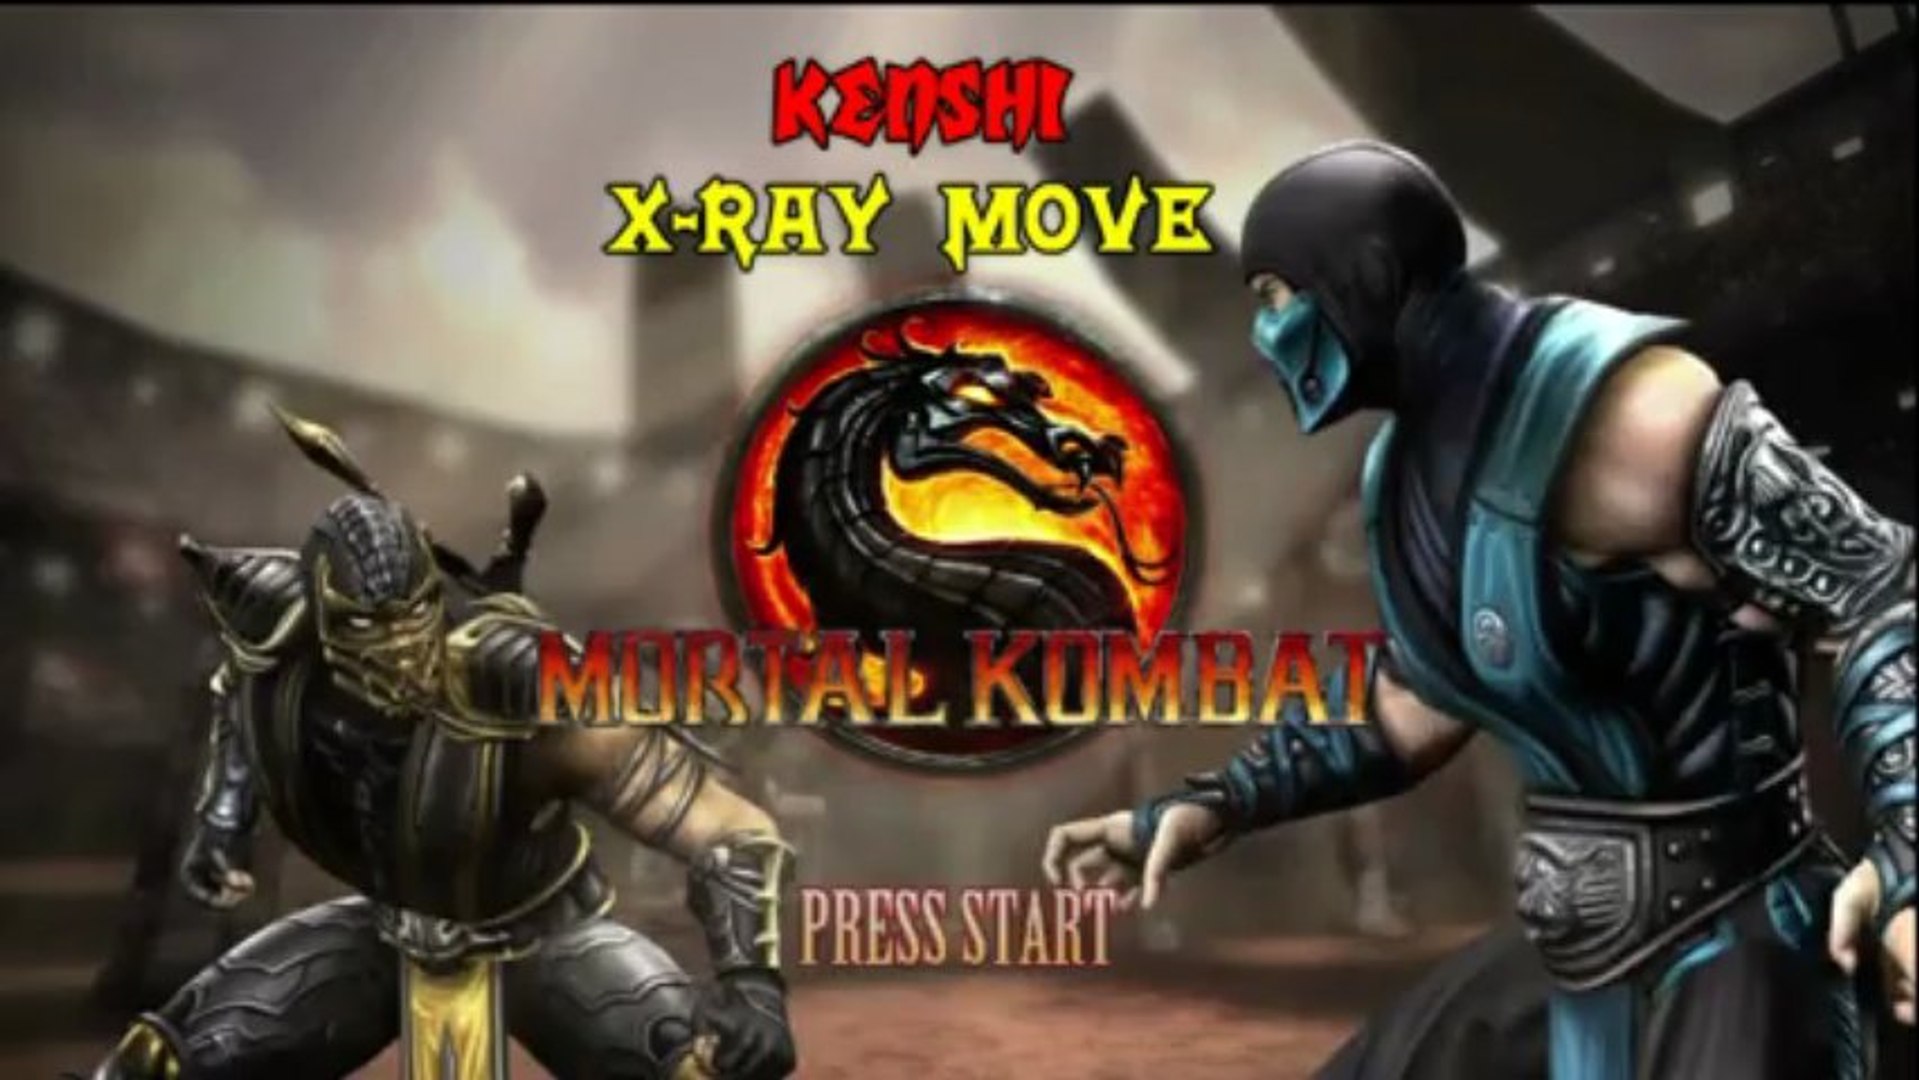 Mortal Kombat 9 Kenshi Xray Move HD 720p